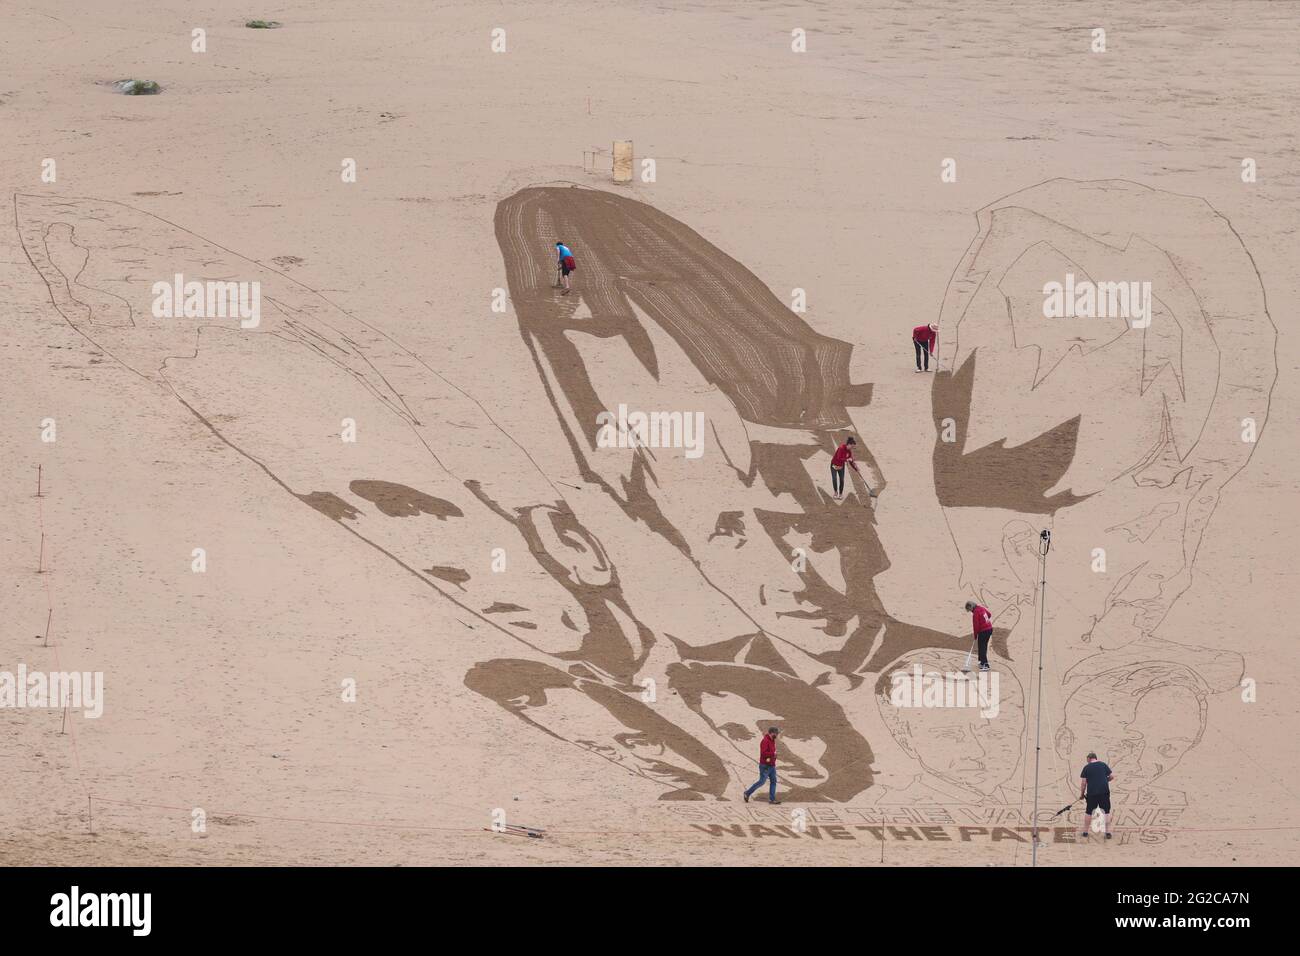 Il gruppo di campagna Avaaz crea una gigantesca opera d'arte sulla spiaggia raffigurante i volti dei leader del G7 insieme a un messaggio scritto nella sabbia con la scritta "Share il vaccino, waive the Patents", a Watergate Bay Beach, Newquay, Gran Bretagna, 10 giugno 2021. REUTERS/Tom Nicholson Foto Stock